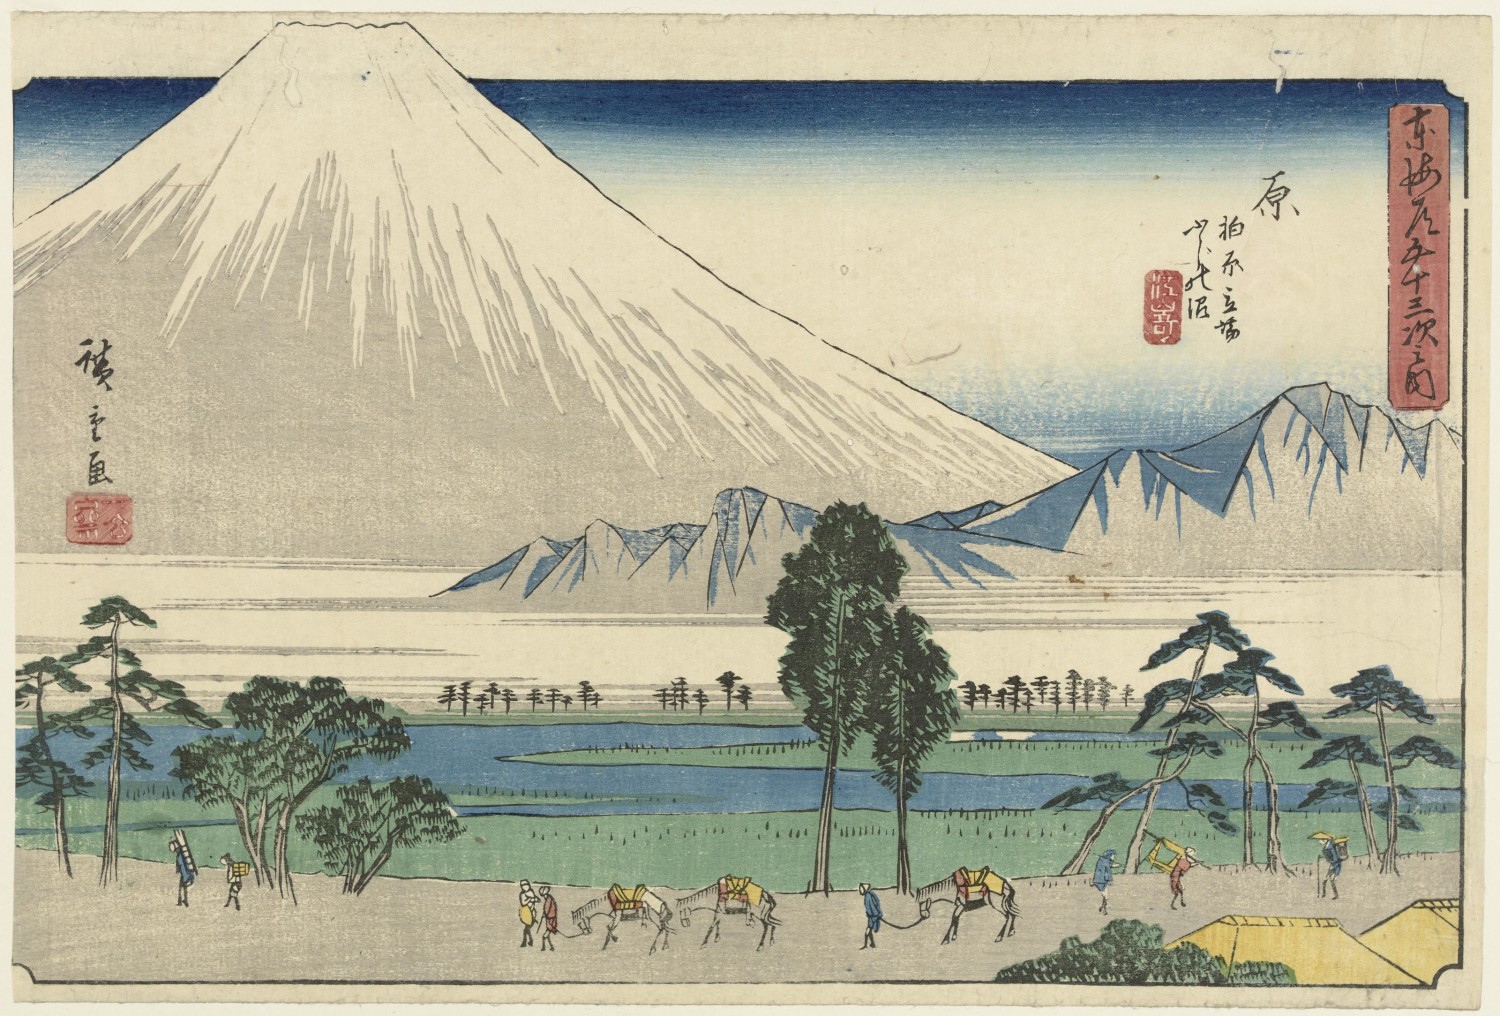 Ando Hiroshige, Hara from Gyosho Tokaido